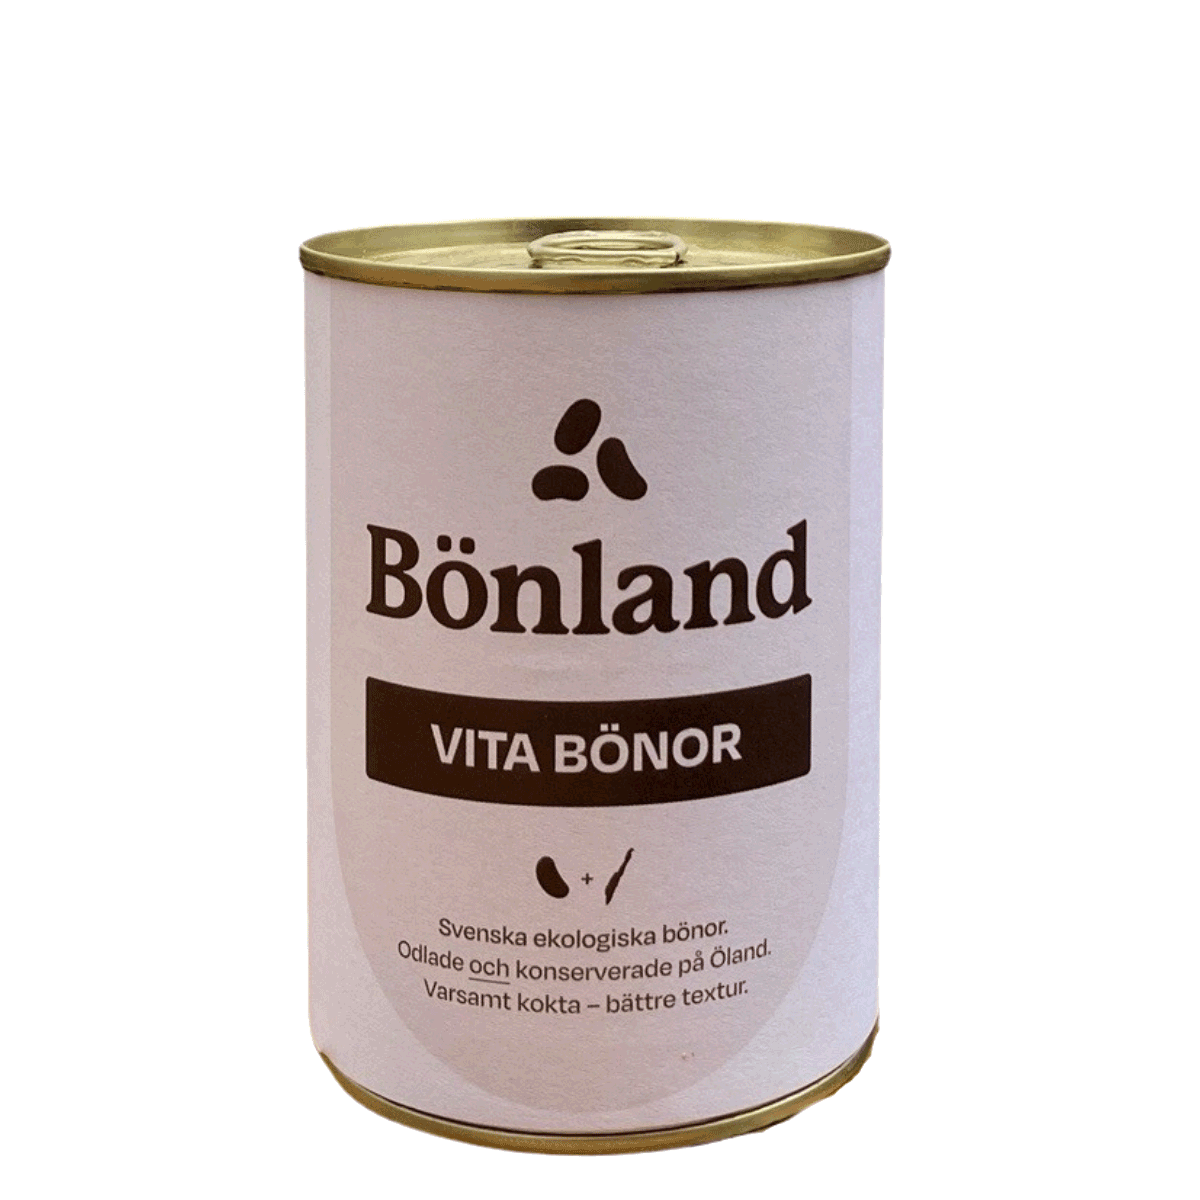 Bönland's Vita bönor'